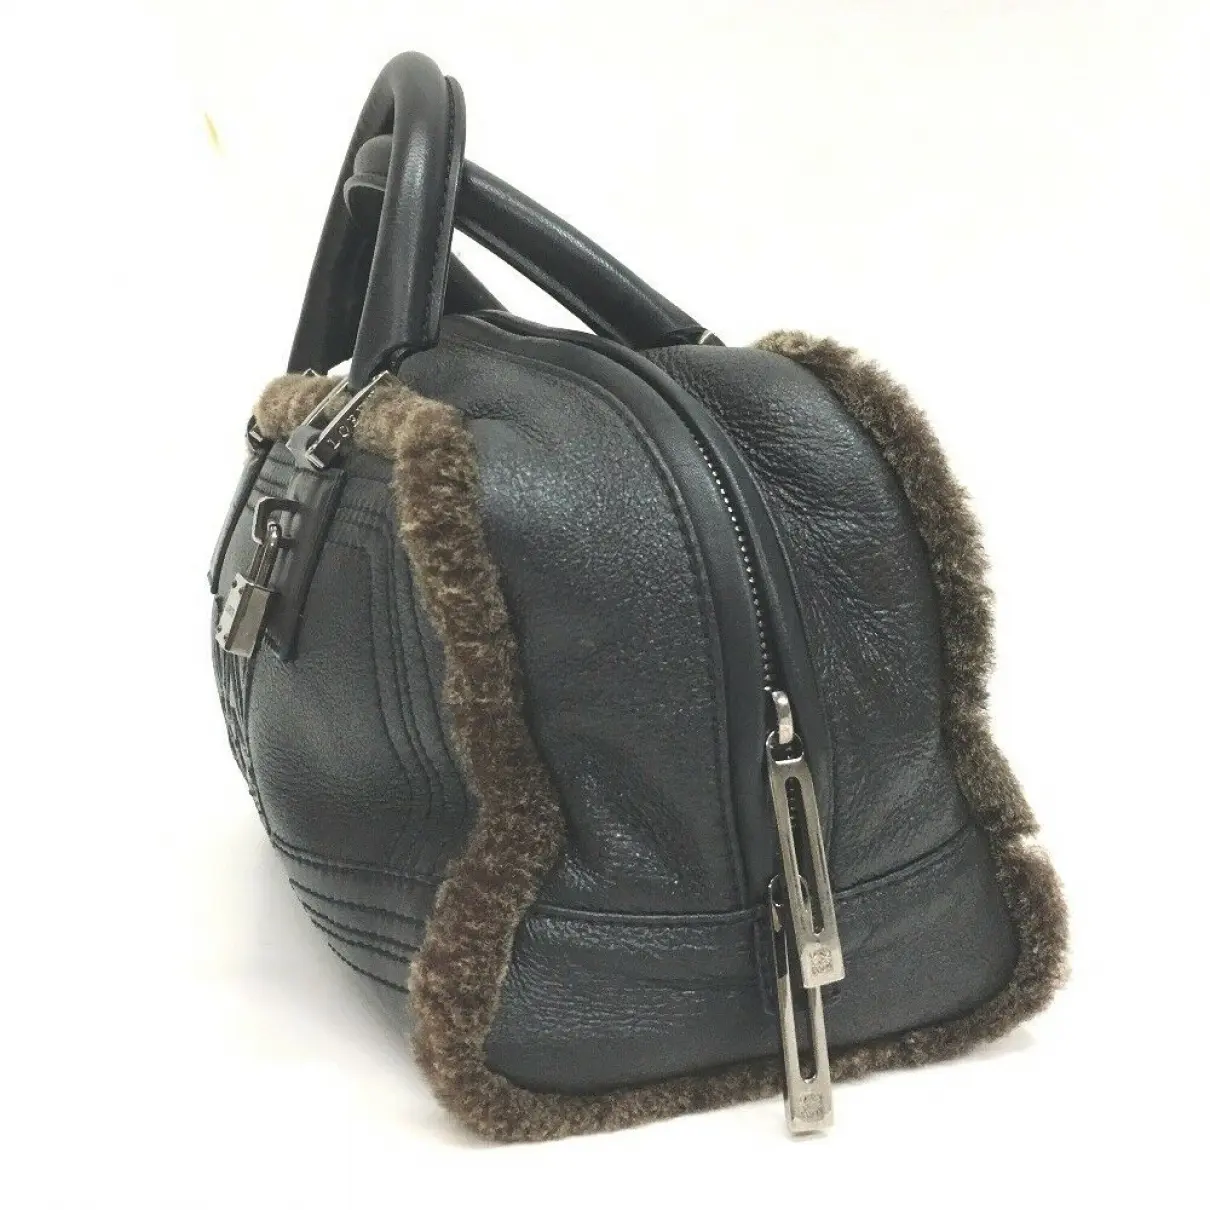 Buy Loewe Amazona leather handbag online